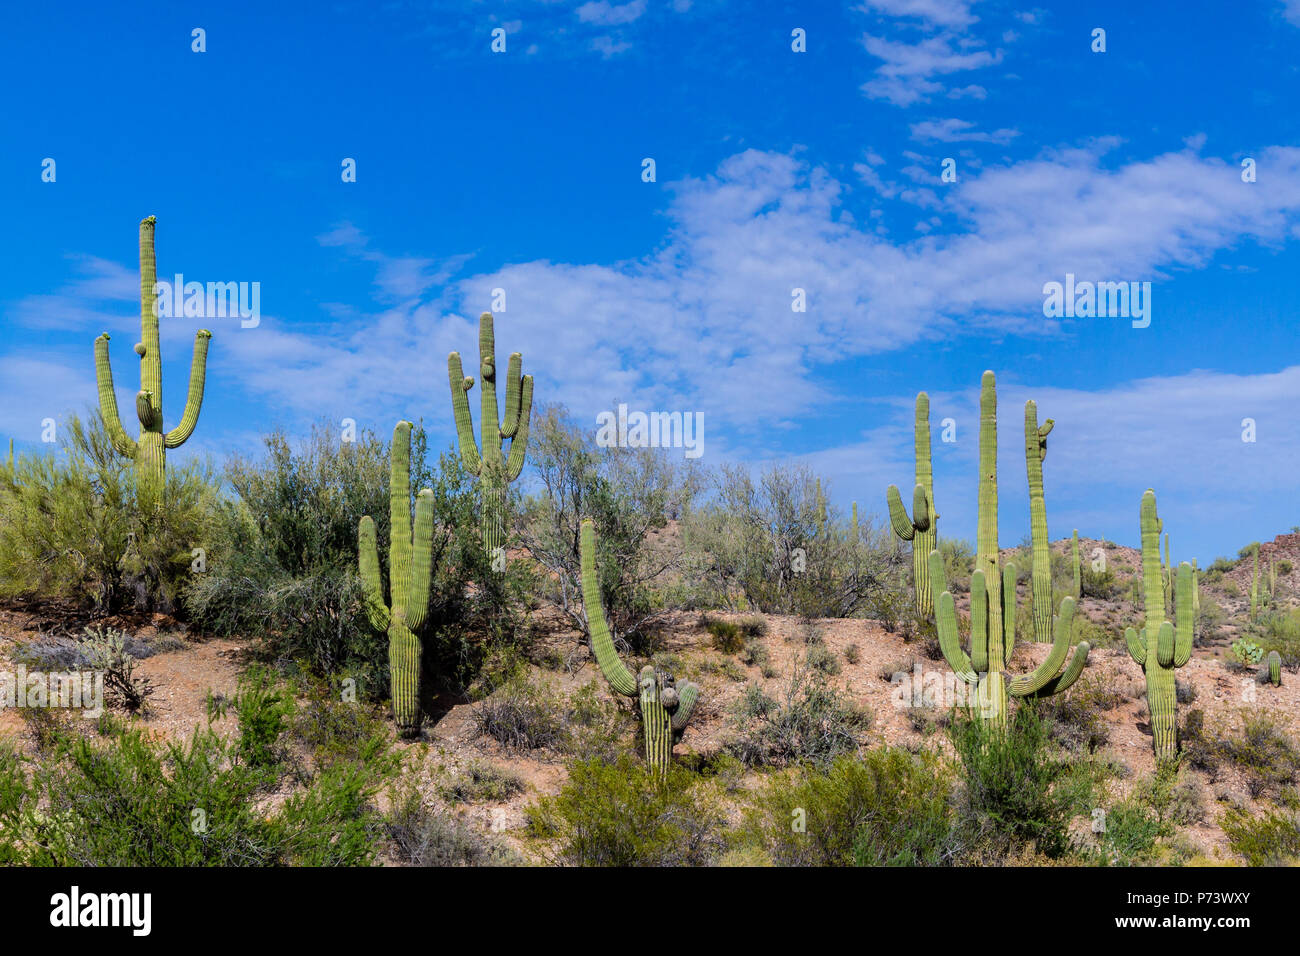 Colina con nativos gigante saguaro, en Arizona, el desierto de Sonora. Desierto azul profundo cielo con nubes se sobrecarga. Foto de stock